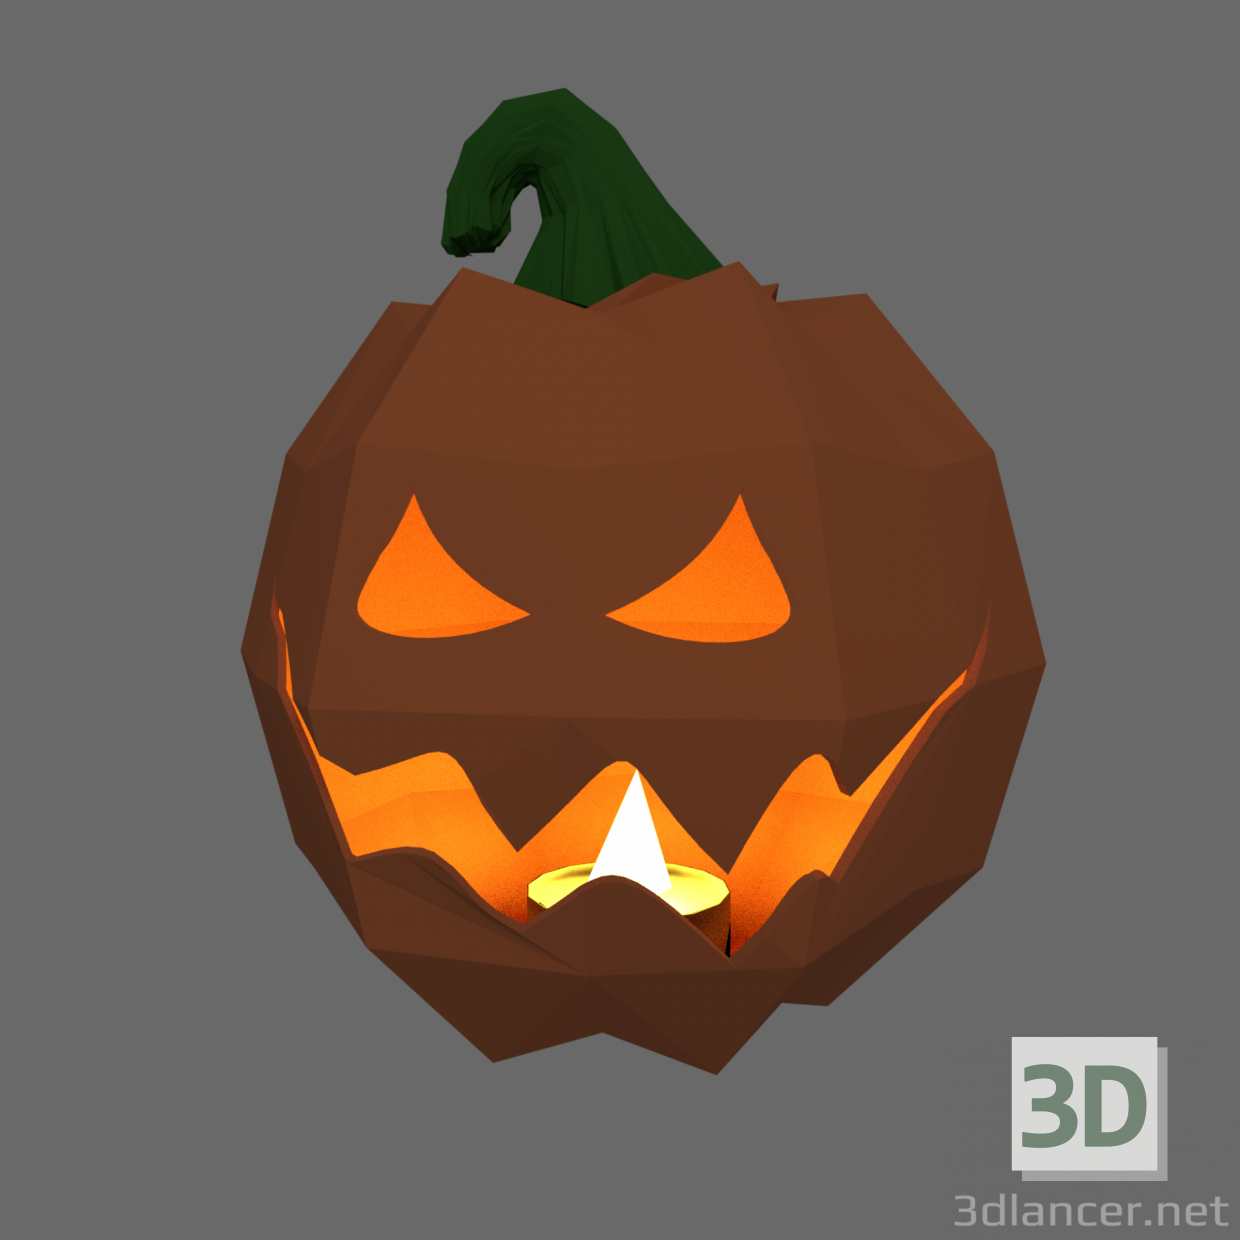 3d Halloween pumpkin model buy - render